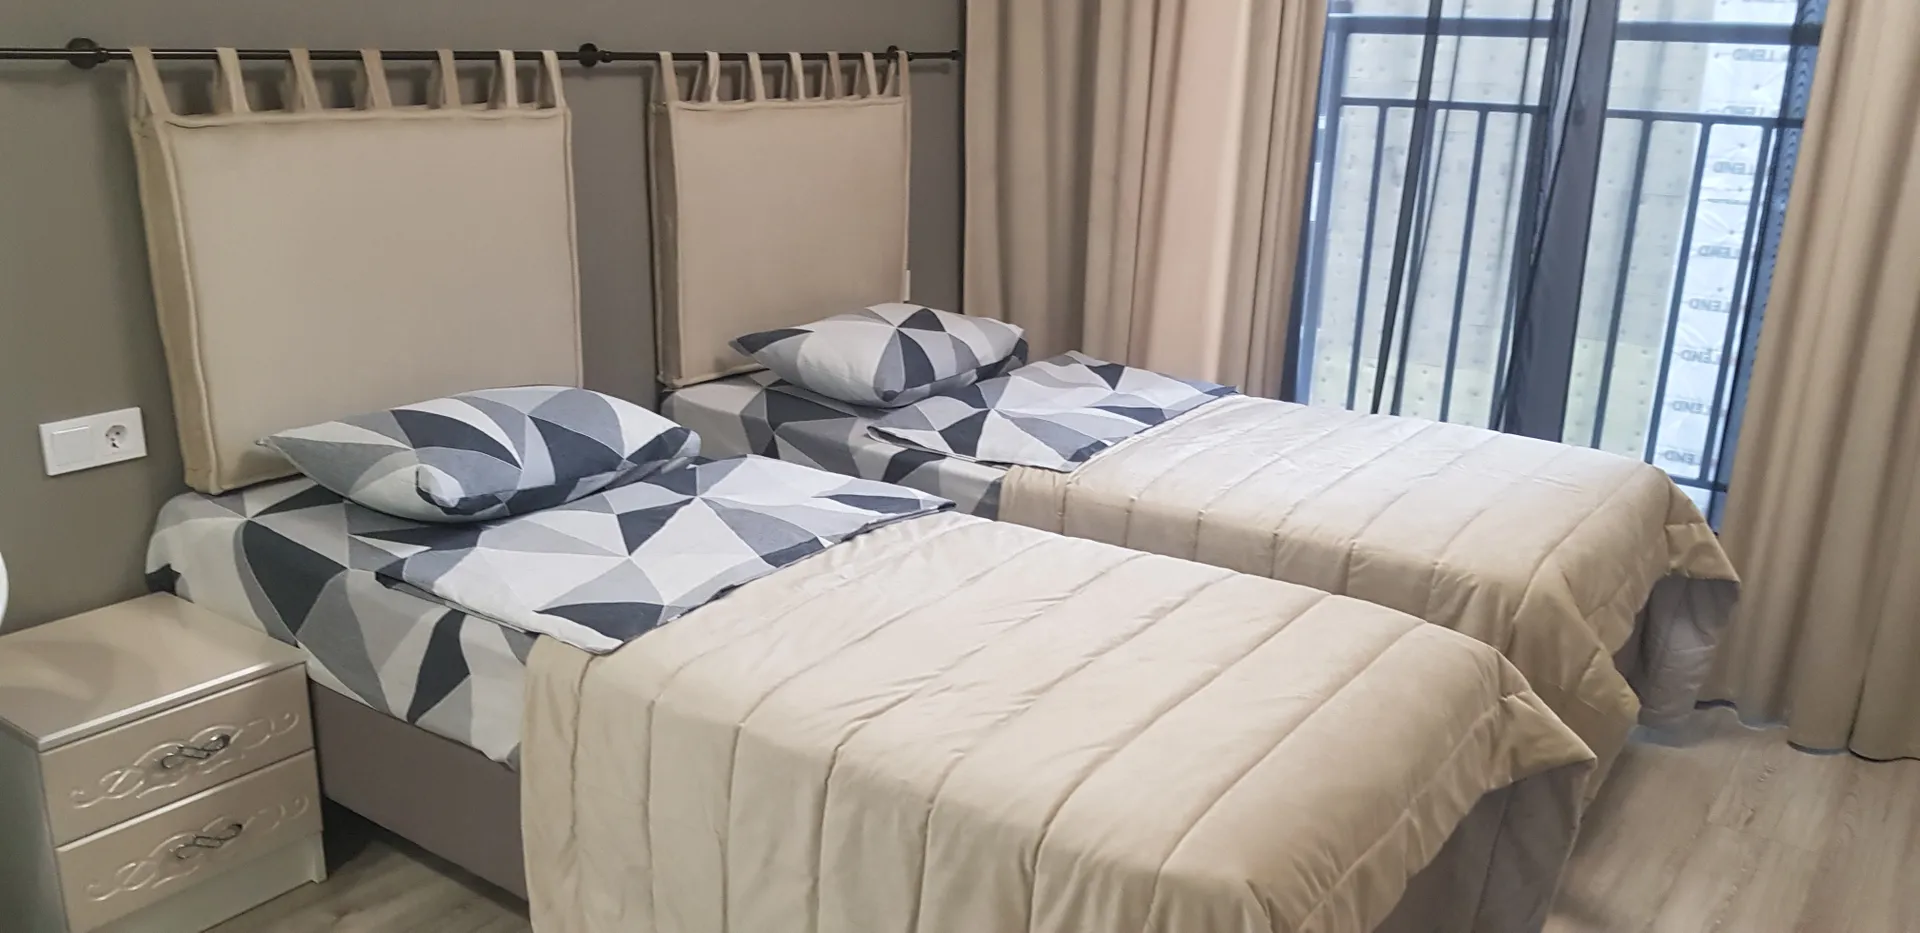 У нас стоят Бокс спринг кровати (как в любой гостинице). Мы можем предоставить вам большую кровать или две односпальные. 